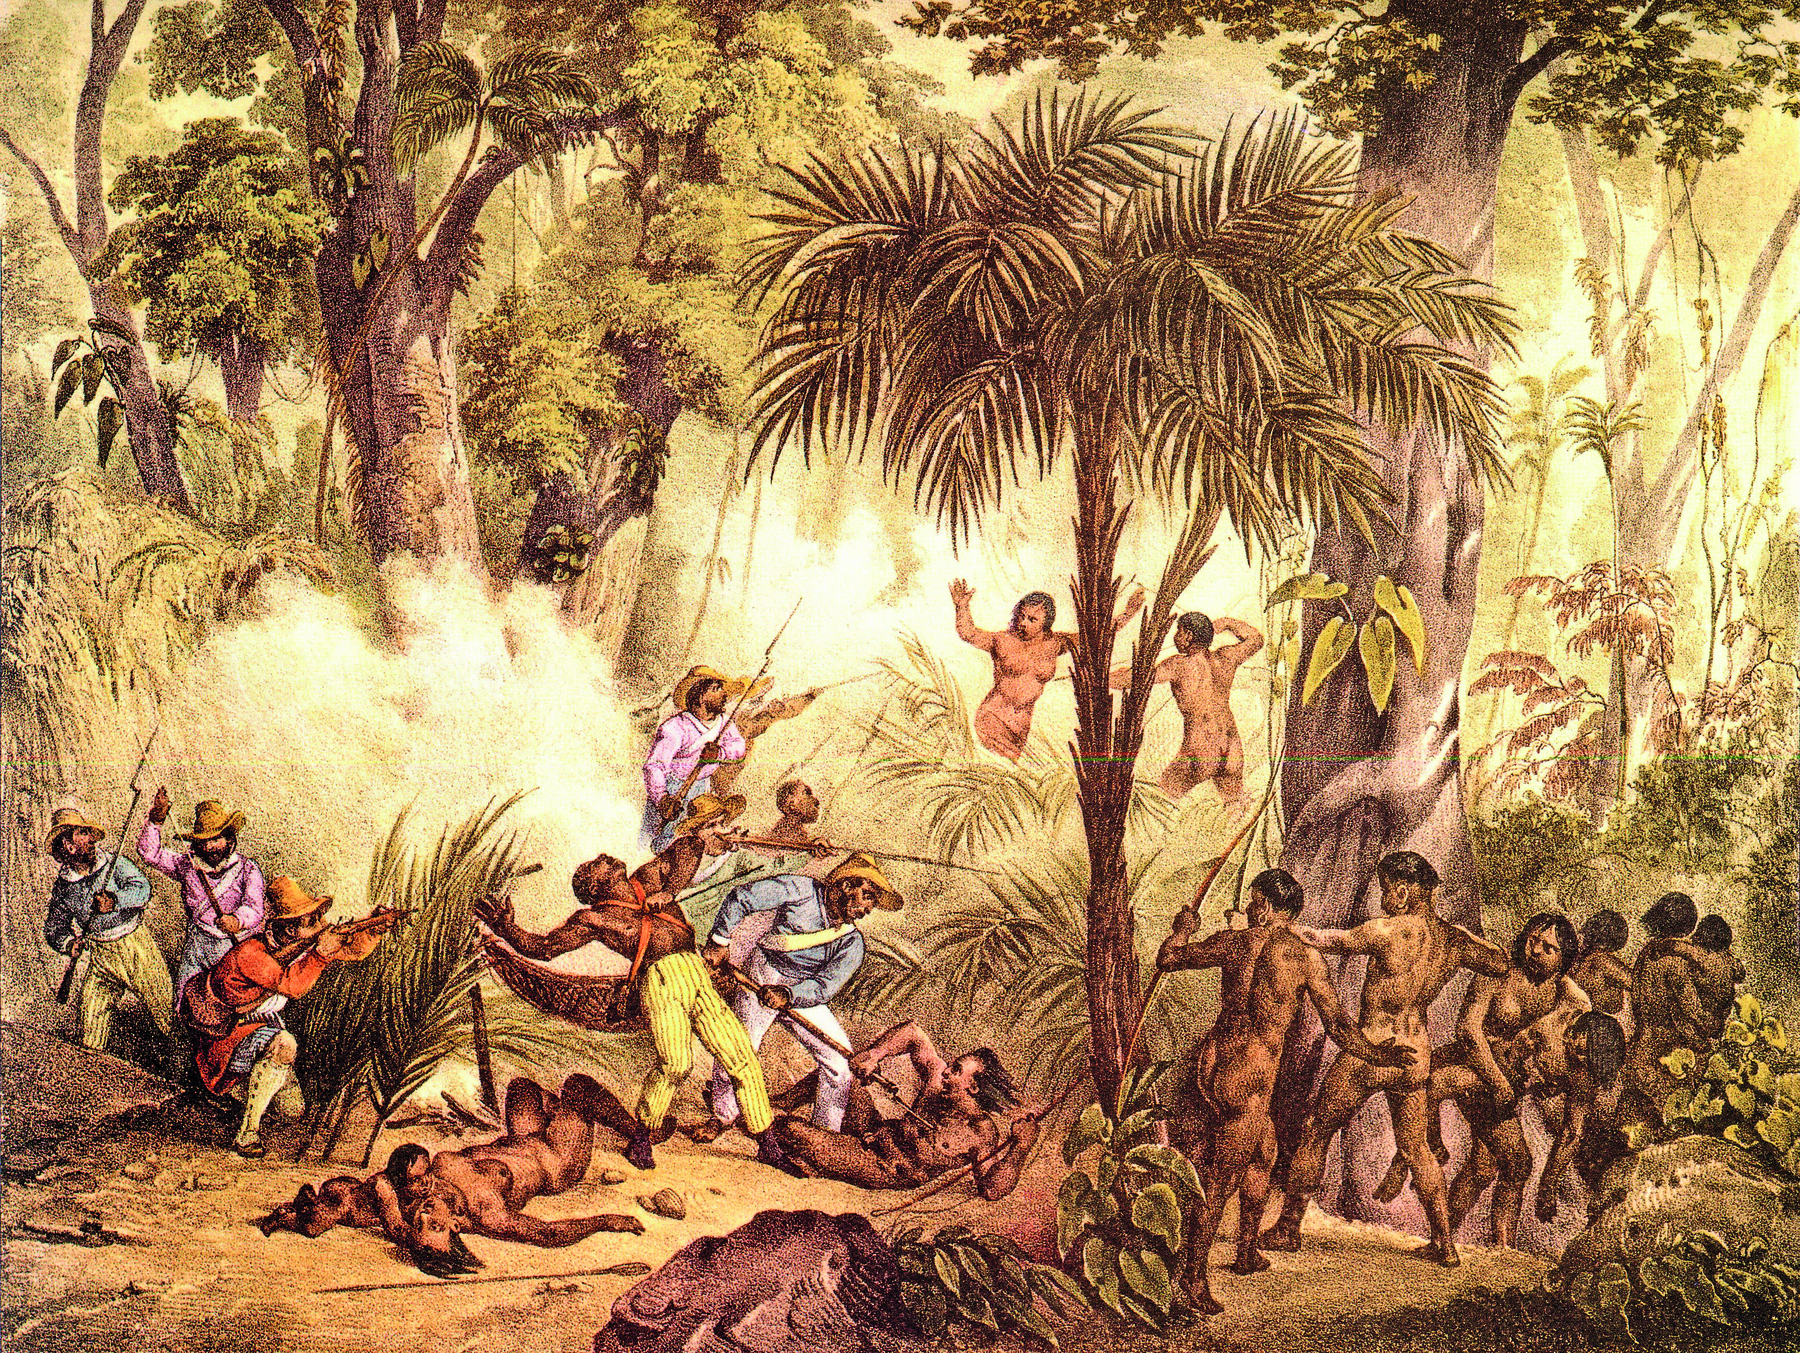 Gravura. Um grupo de indígenas dispersos por entre a mata densamente vegetada, alguns caídos ao chão, outros portando lanças, arcos e flechas. Entre eles, homens vestindo camisas, calças e chapéus, portando lanças e armas.